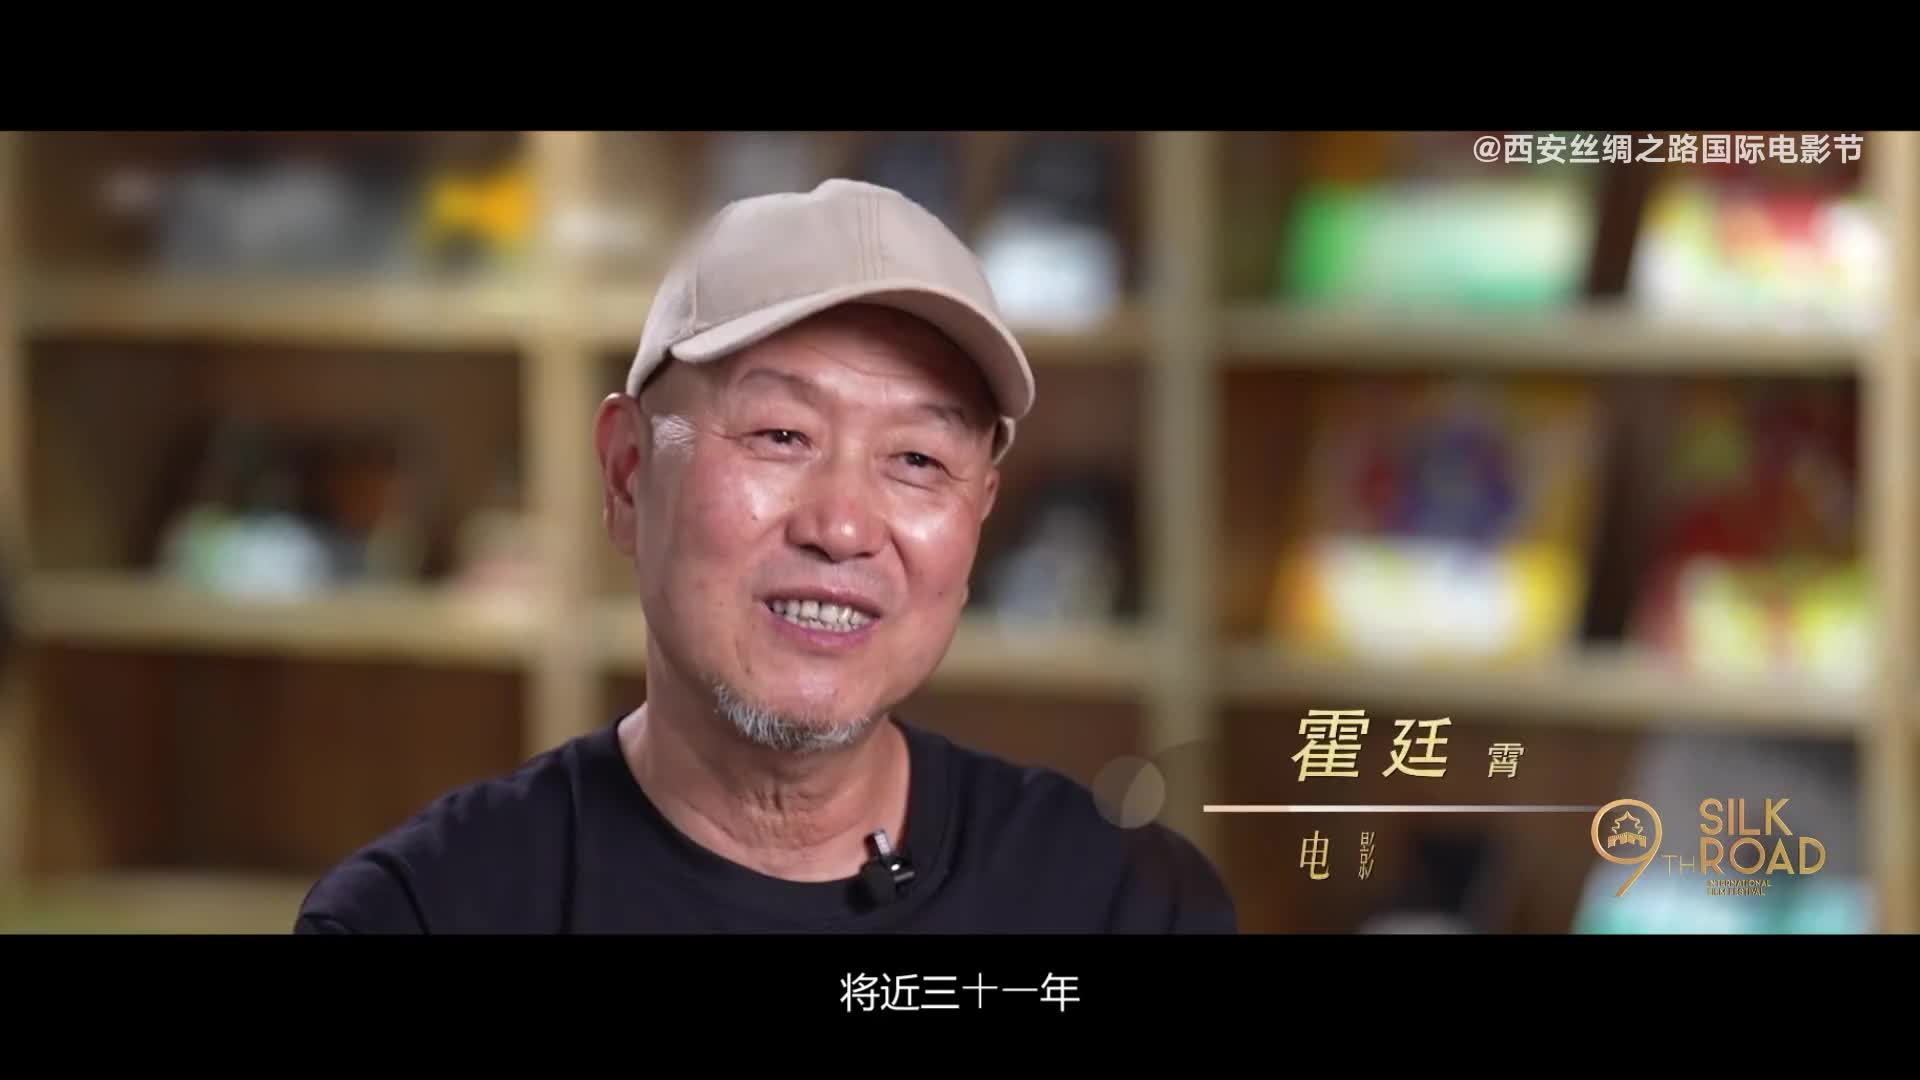 对话电影美术师霍延霄、本届电影节宣传大使张雨绮